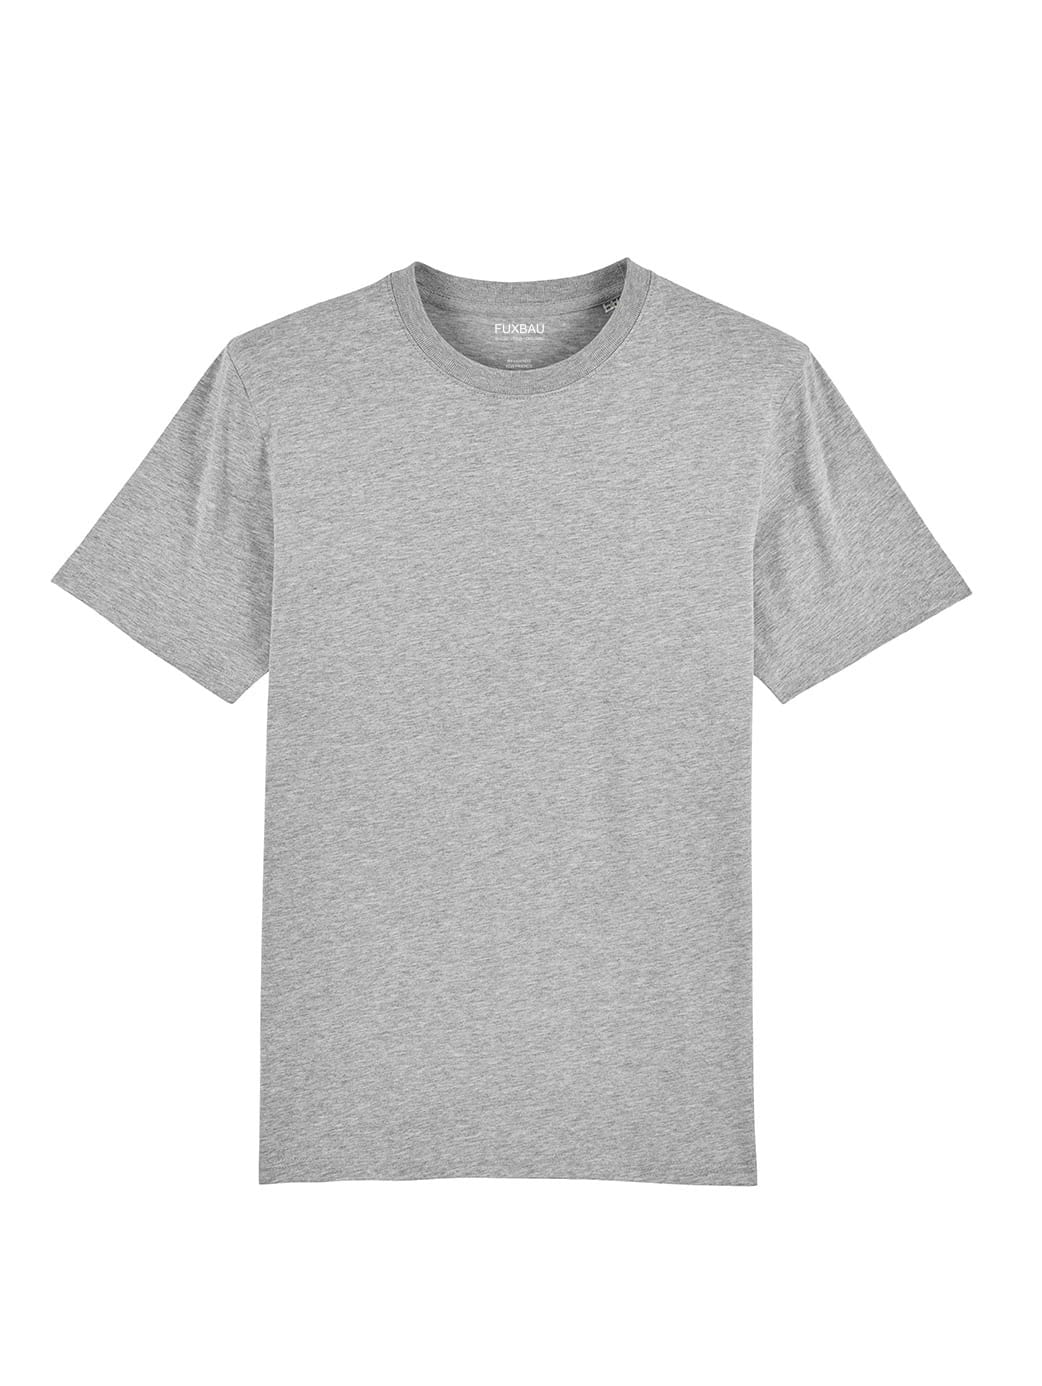 Nachhaltiges Fair Fashion Unisex Standard Basic T-Shirt in grau von FUXBAU aus 100% GOTS zertifizierter Biobaumwolle.